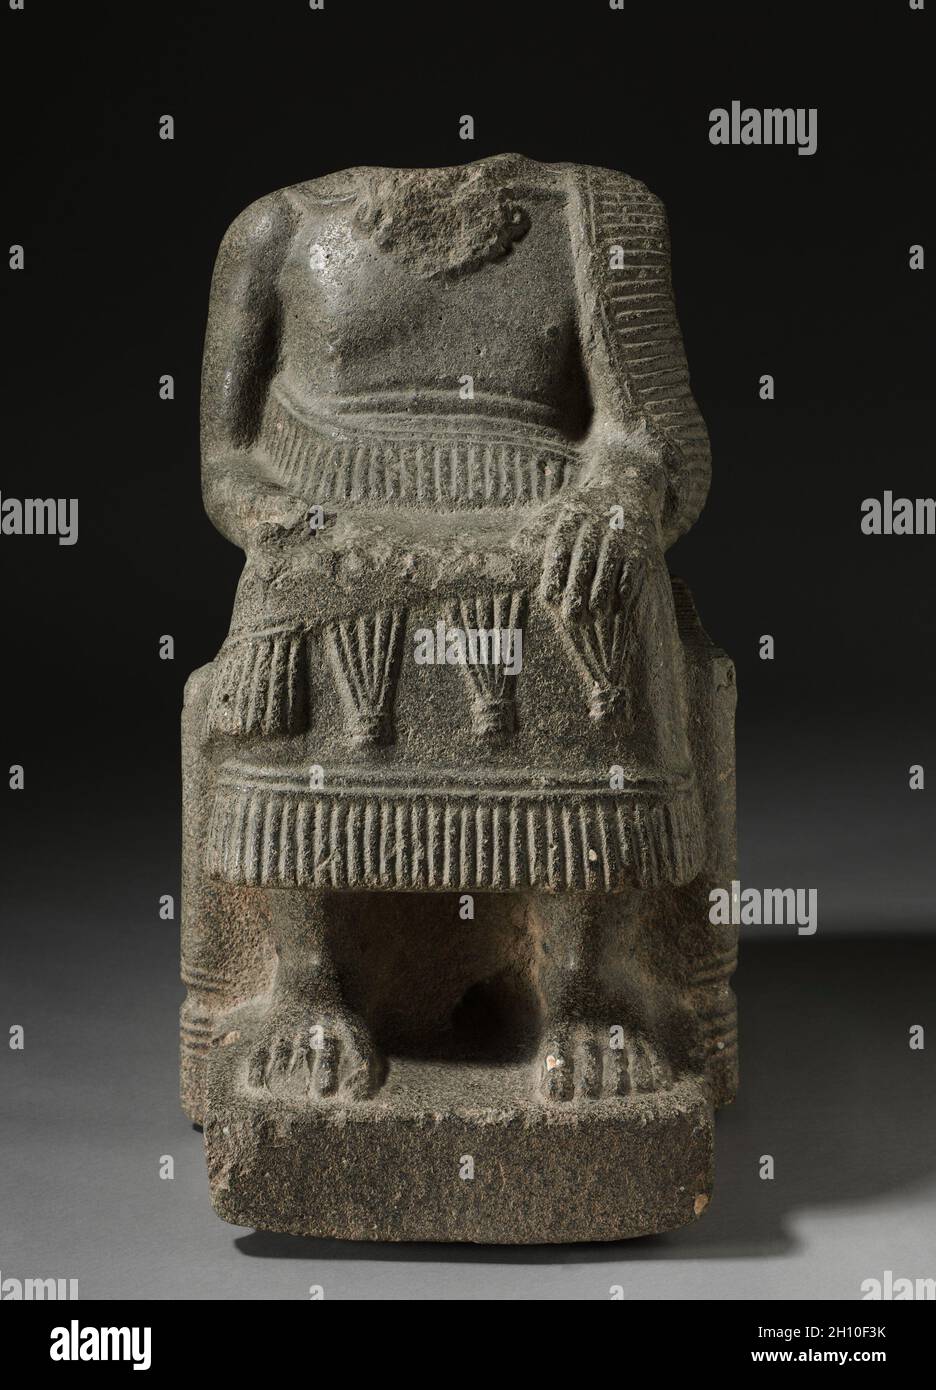 Righello seduto, 2000–1700 a.C. Siria settentrionale, forse l'area di Ebla, 2000-1700 AC. Calcare con inclusioni di guscio; totale: 66.7 x 38.2 x 54.6 cm (26 1/4 x 15 1/16 x 21 1/2 poll.). Foto Stock